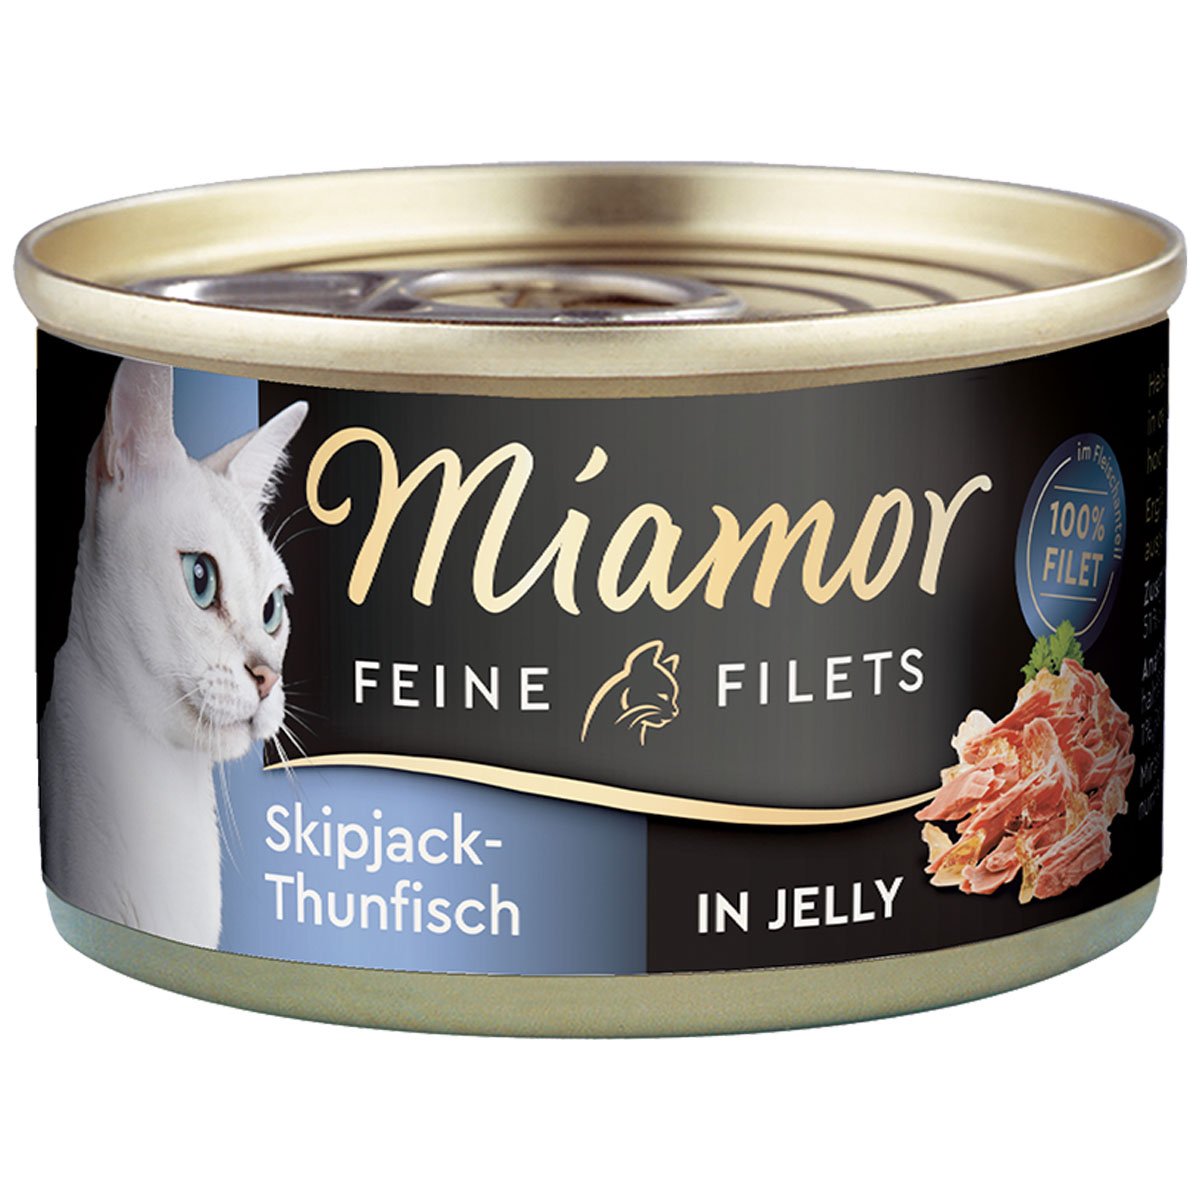 Miamor Feine Filets Skipjack-Thunfisch in Jelly 24x100g von Miamor